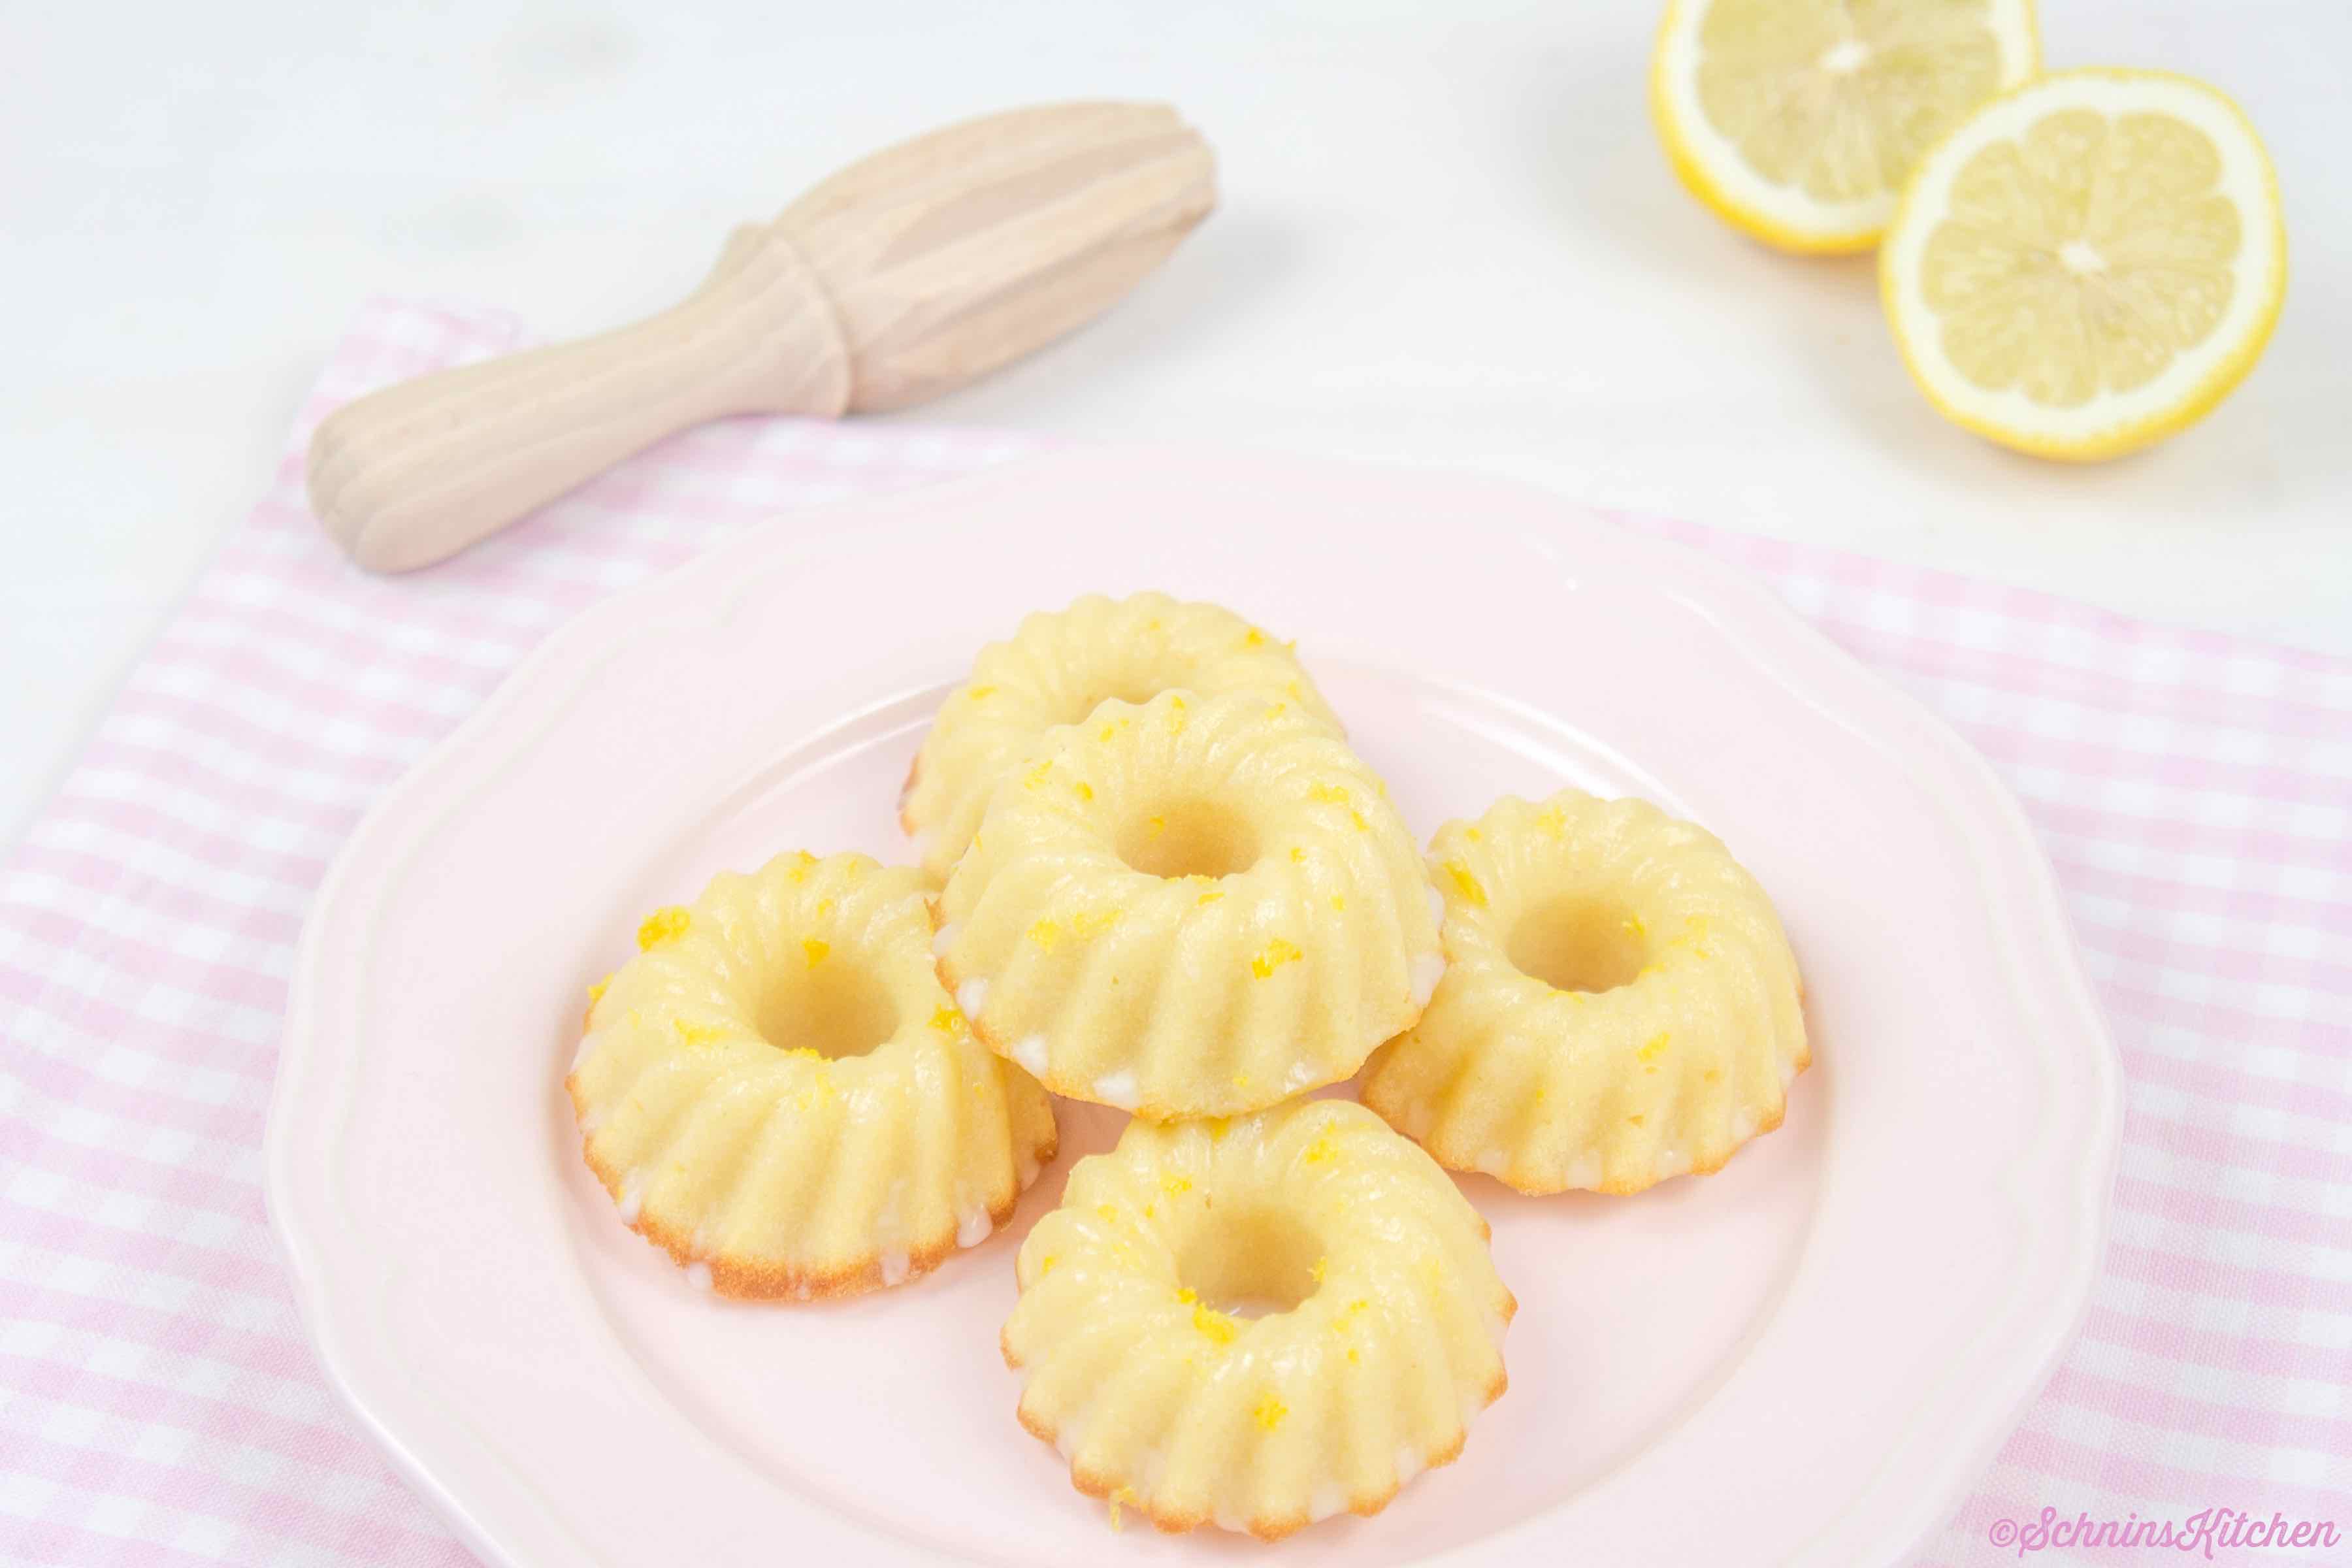 Kleine Zitronen-Gugelhupfe - kleine, feine Kuchen mit Zitrone und Glasur | www.schninskitchen.de